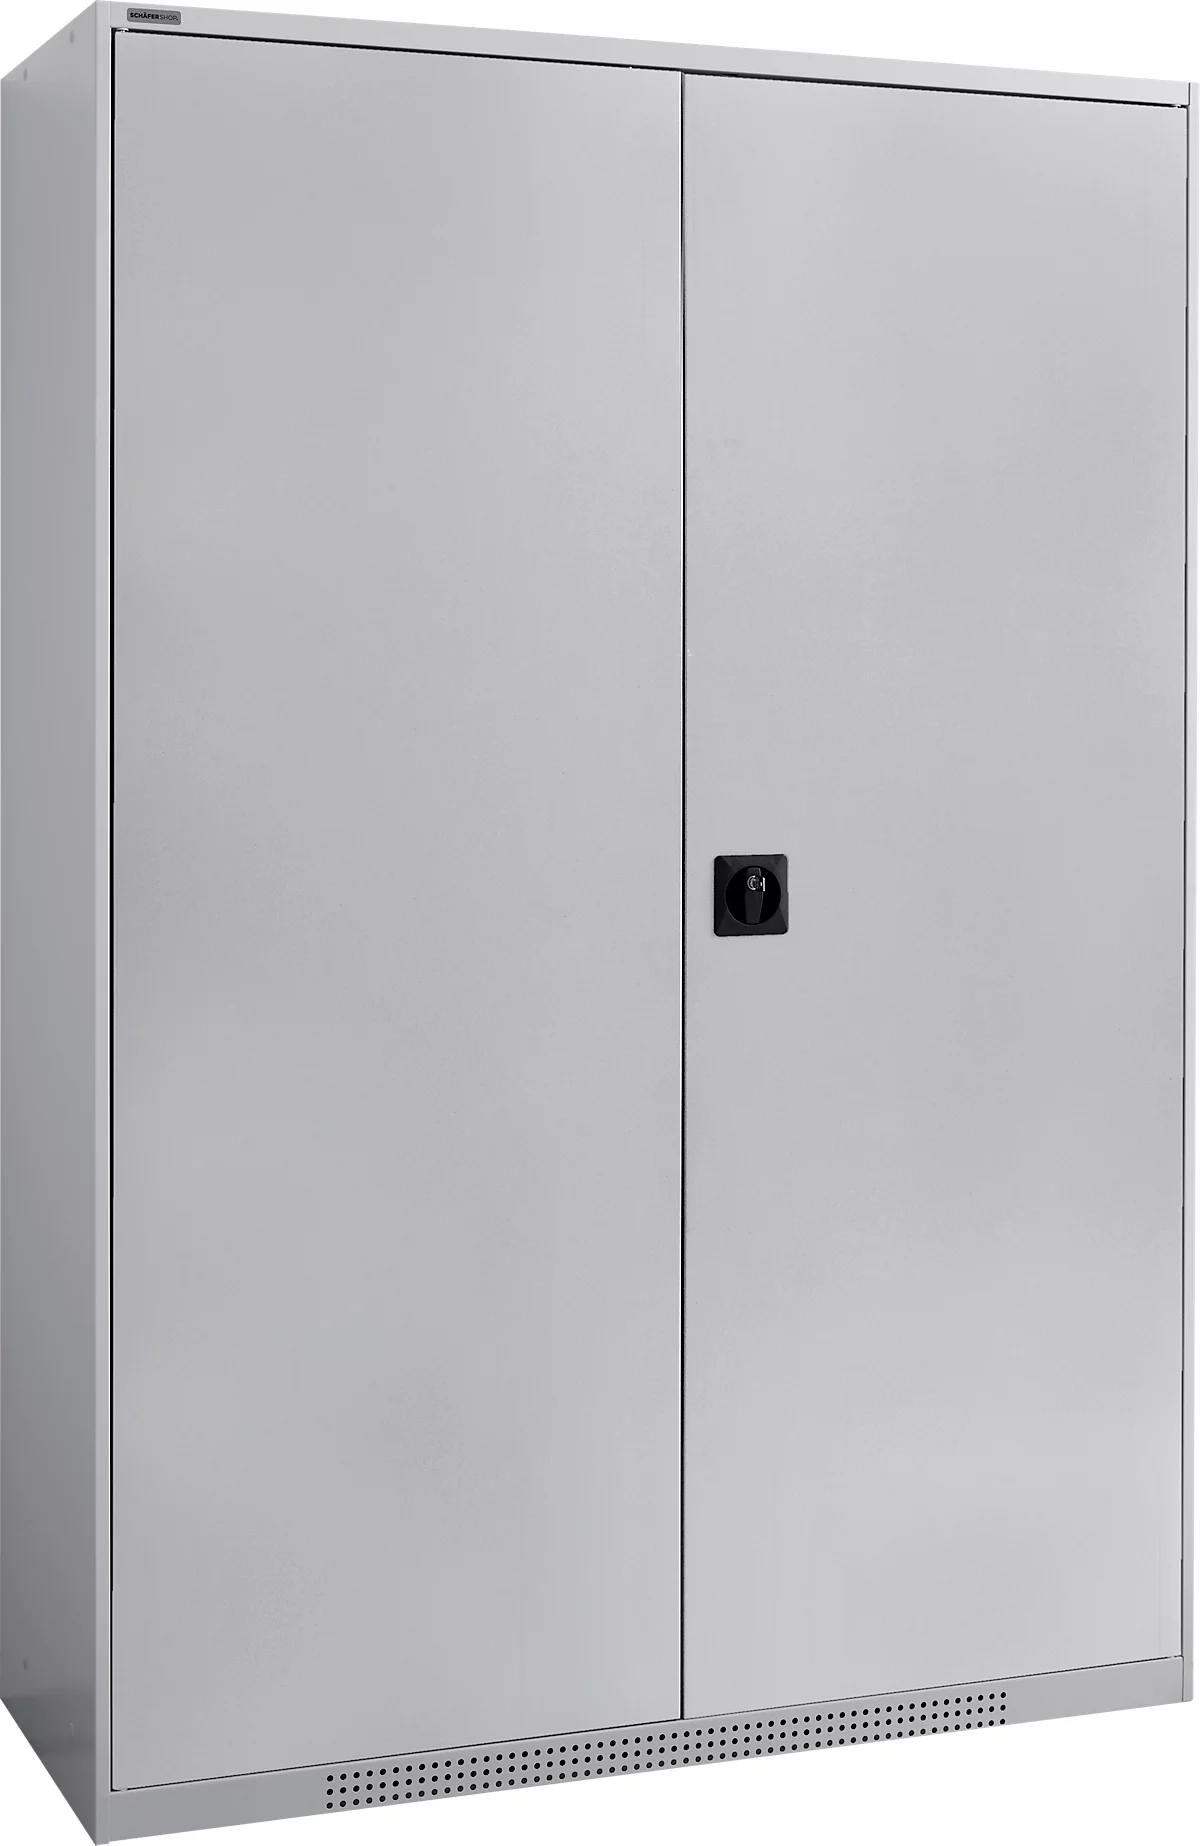 Schäfer Shop Genius FS armario con puerta abatible, acero, con orificios de ventilación, ancho 1343 x fondo 520 x alto 1950 mm, 5 OH, aluminio blanco/aluminio blanco, hasta 750 kg